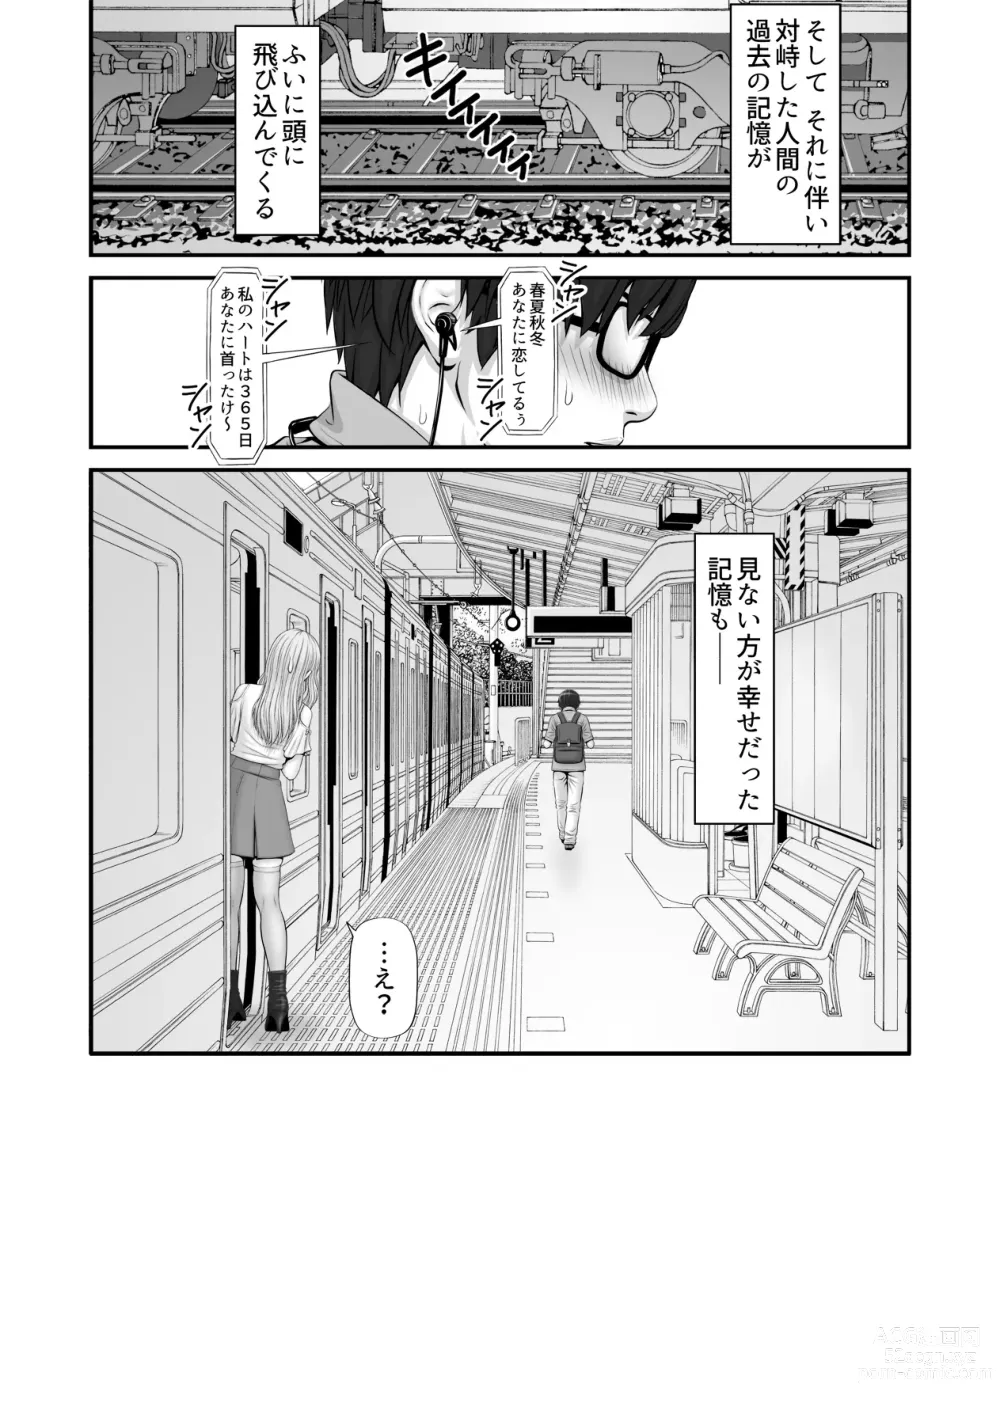 Page 42 of doujinshi Shiseikatsu ga mieru! ~Tsuugaku densha hen~